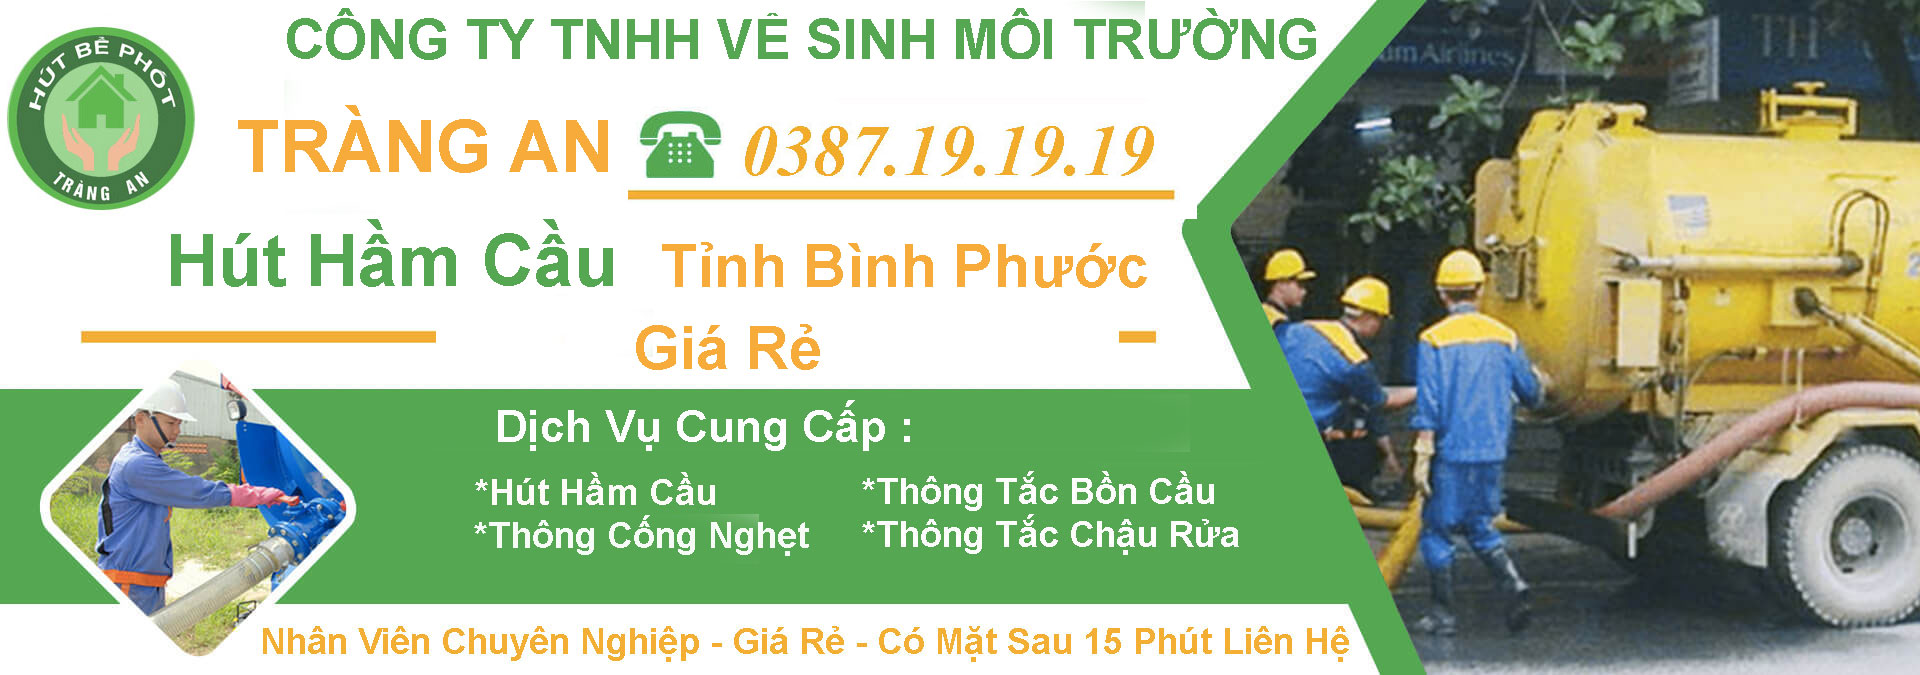 Hut Ham Cau Binh Phuoc